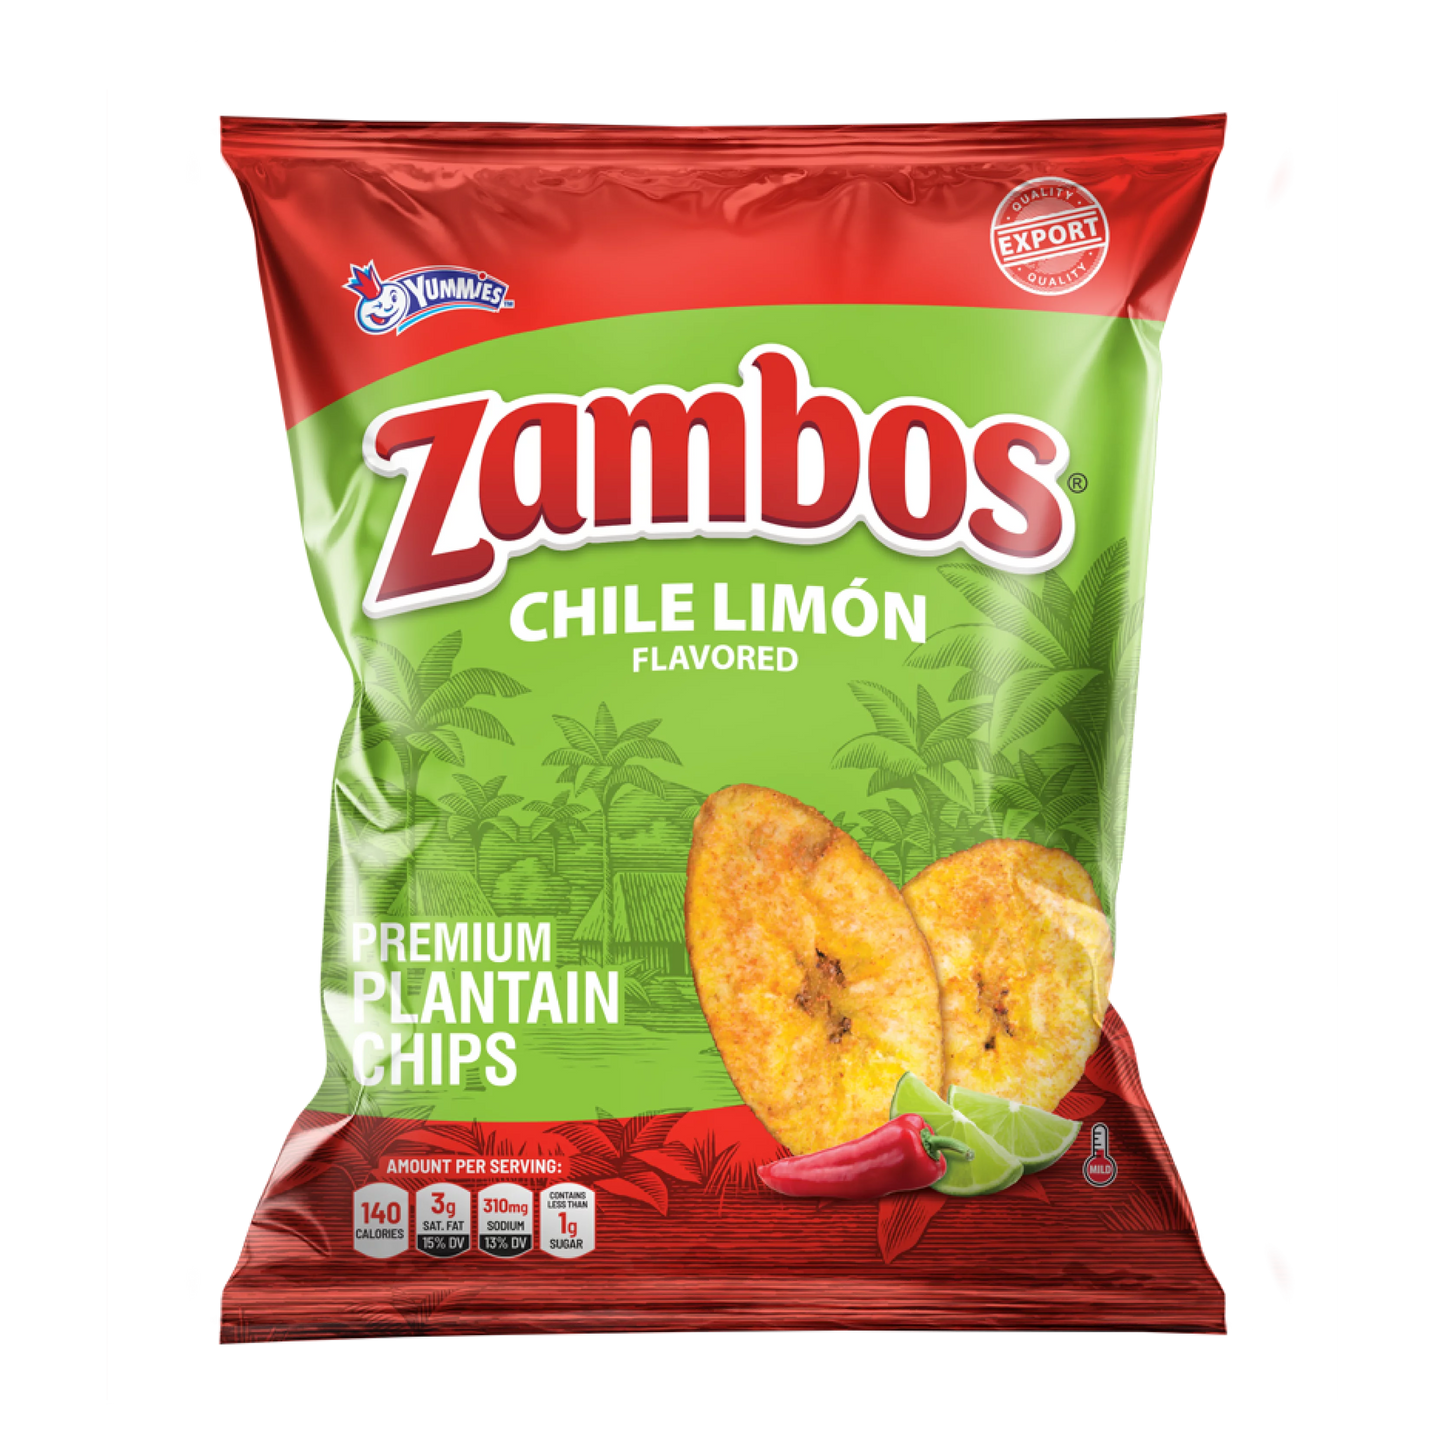 Zambos Chile Limon (5.3 oz)